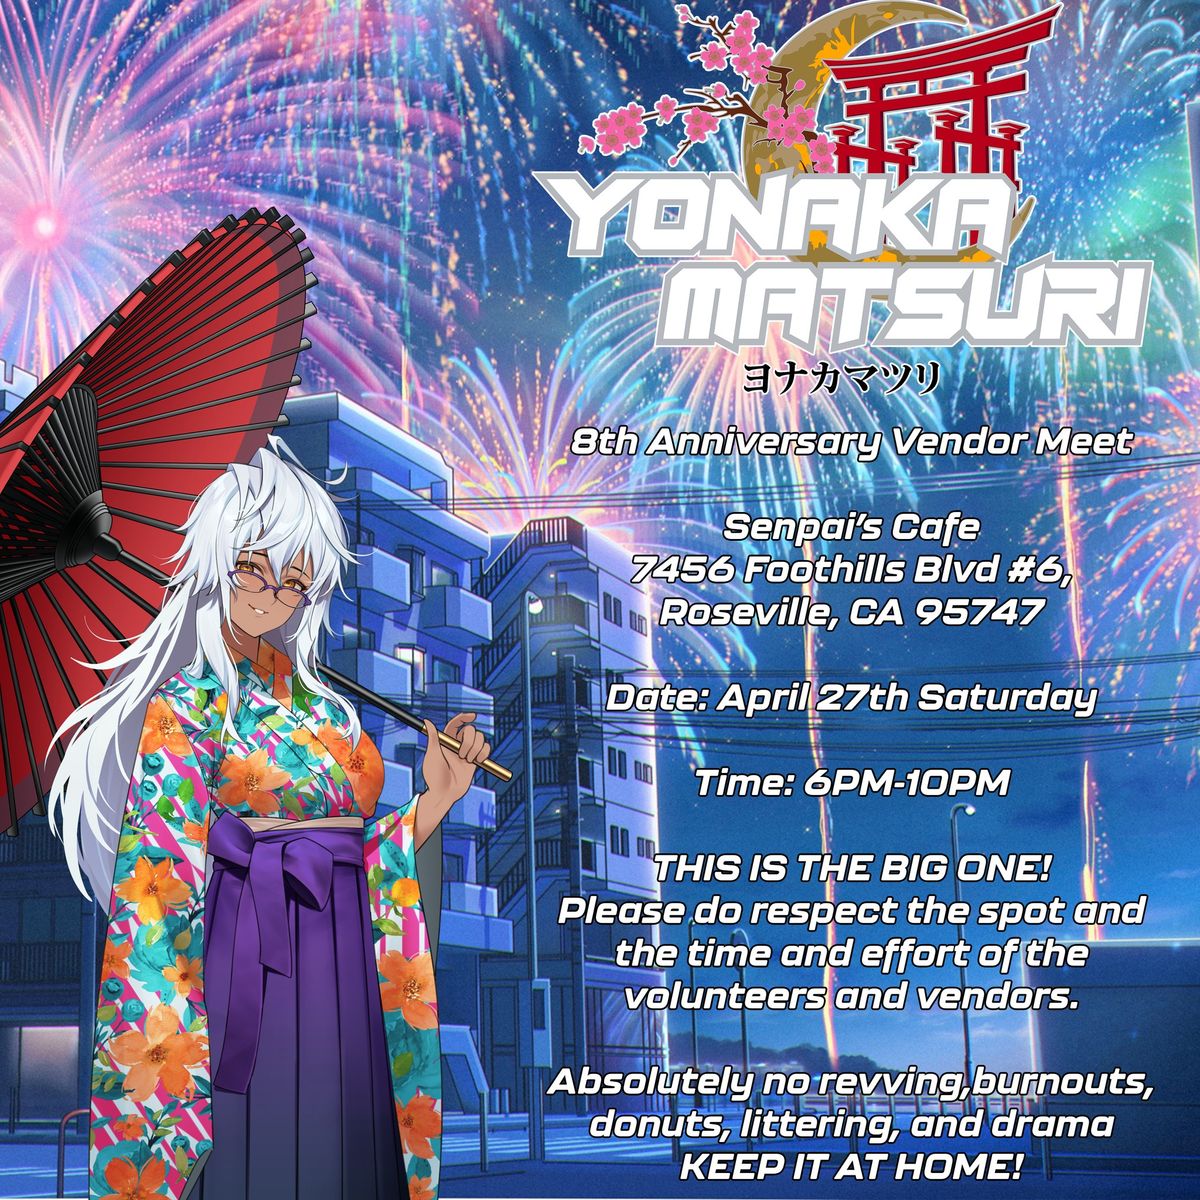 Yonaka Matsuri 8th Anniversary Vendor Meet